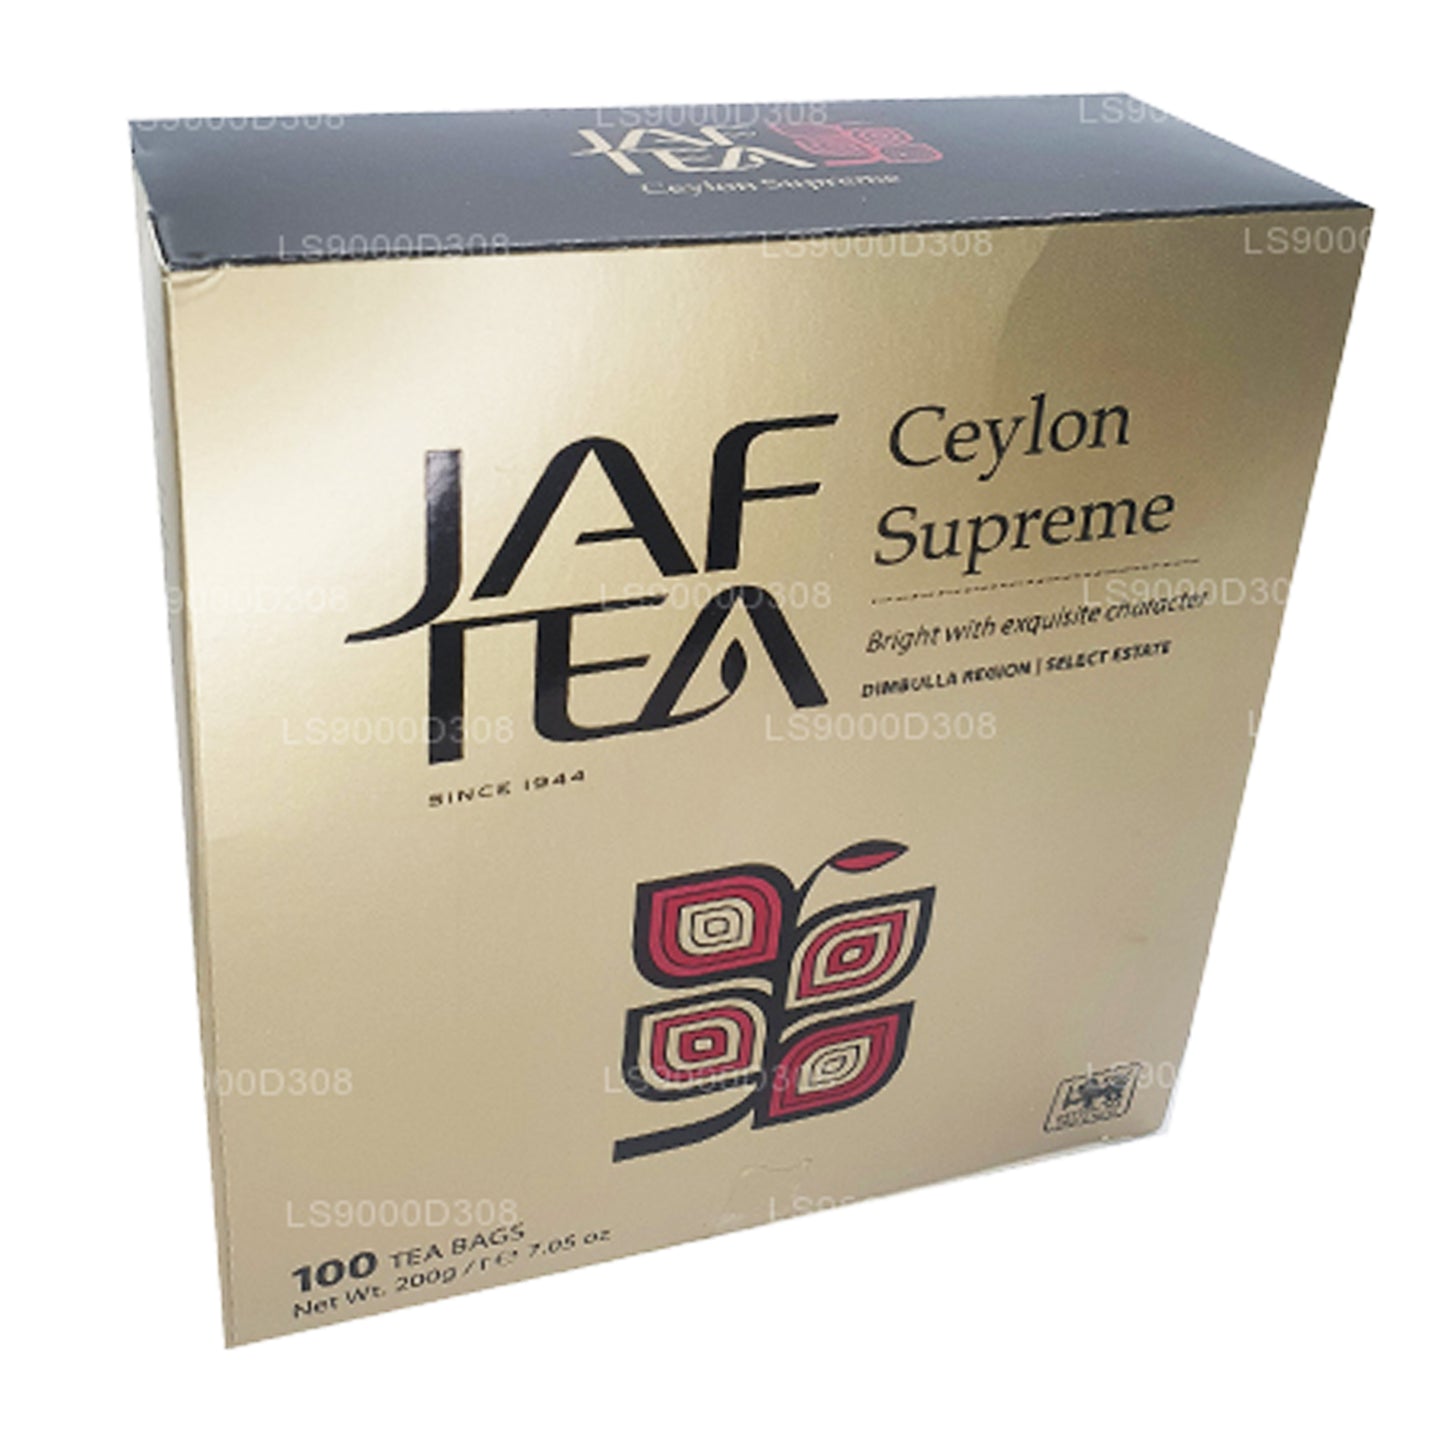 Jaf Tea Classic Gold Collection Ceylon Supreme 100 Teebeutel, Schnur und Anhänger, 200 g